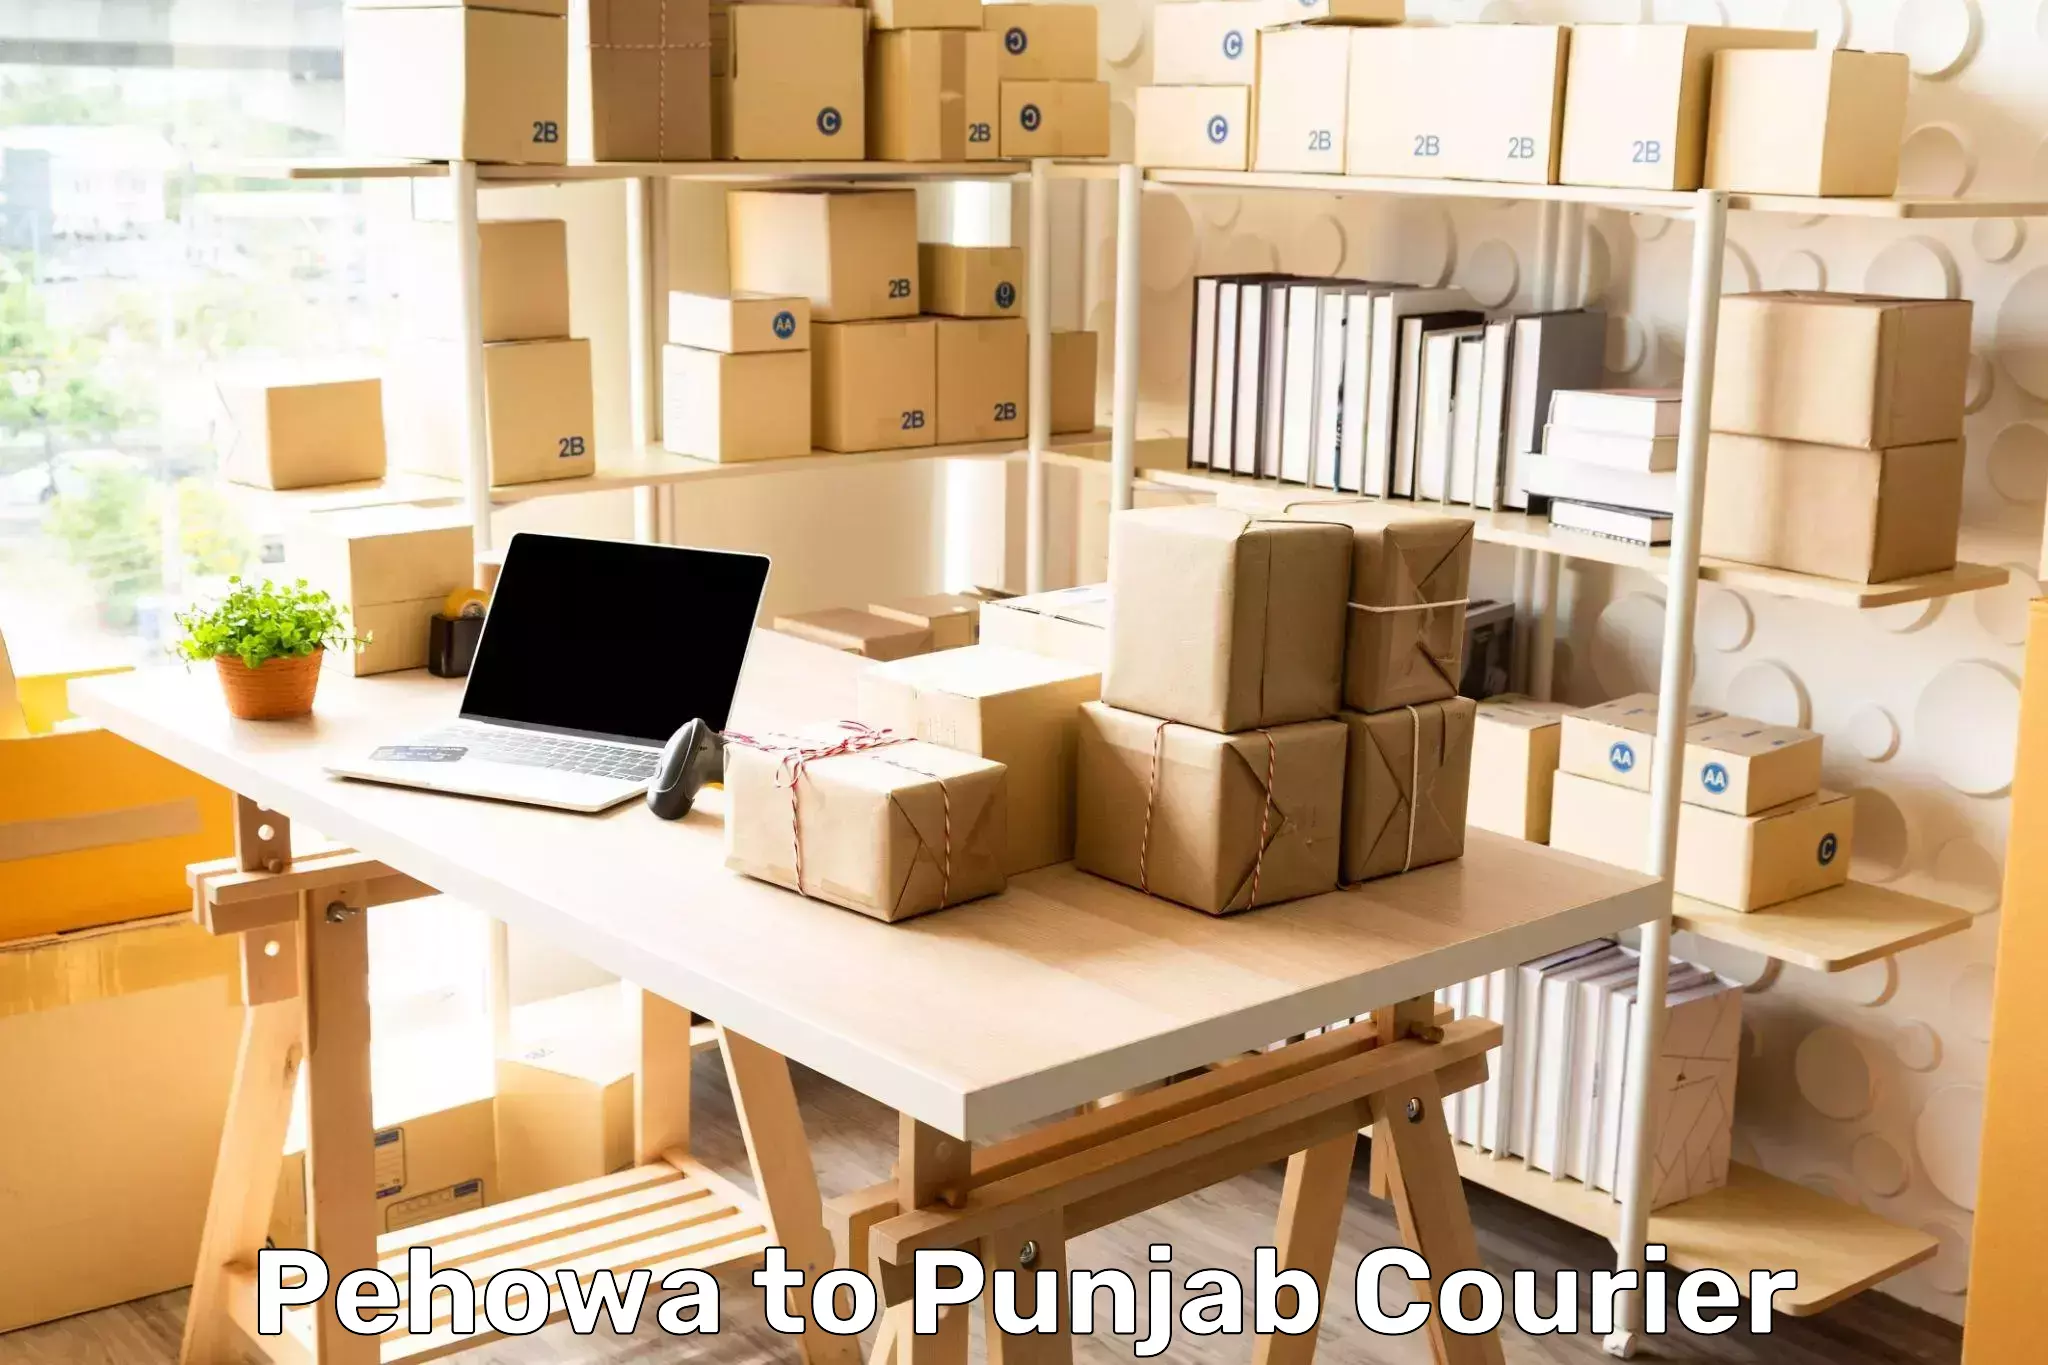 Efficient parcel tracking Pehowa to Punjab